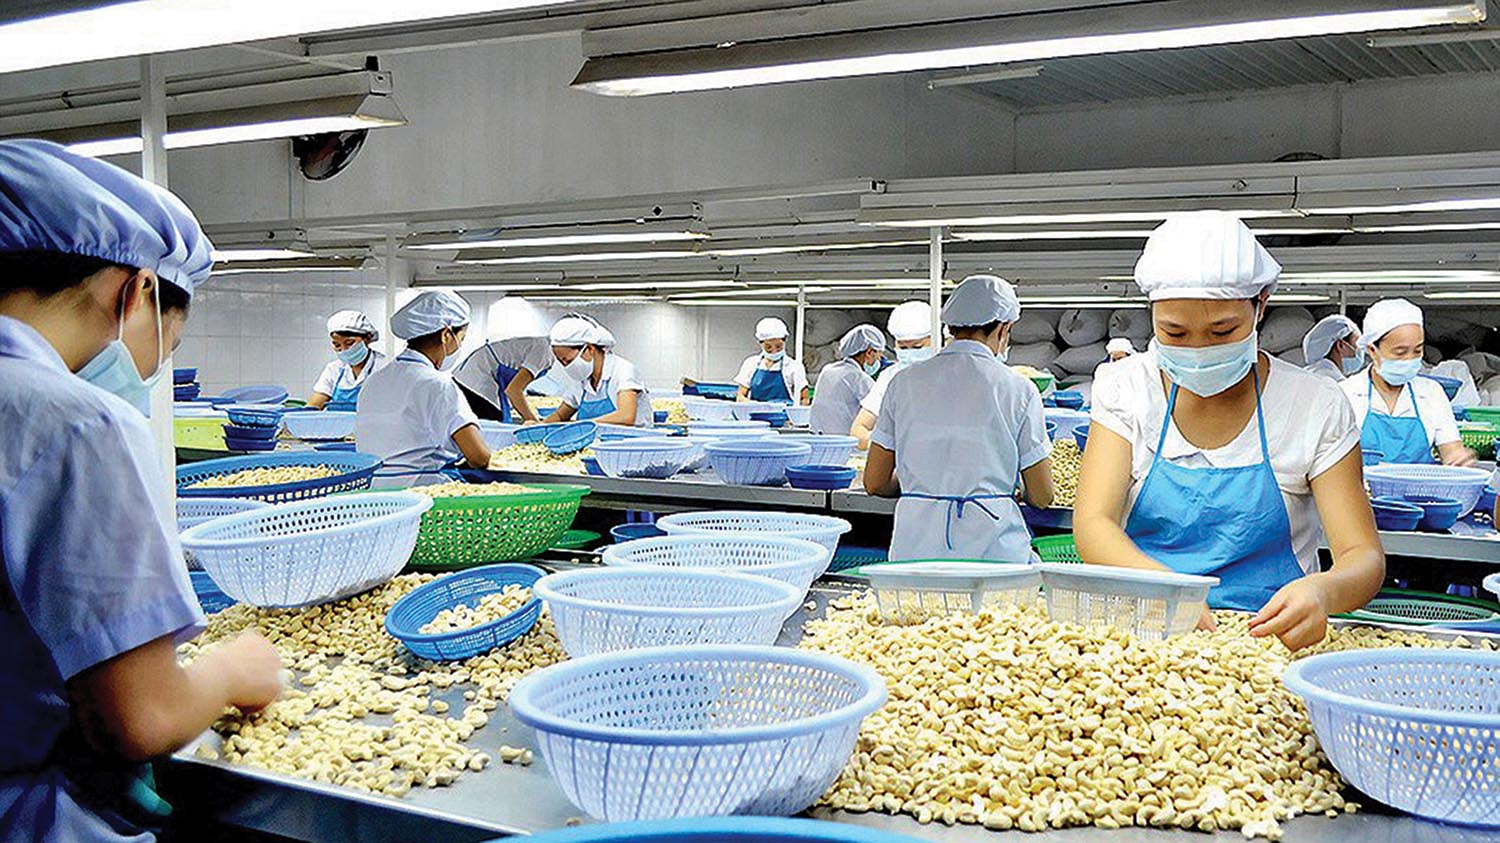 Việt Nam đang là quốc gia xuất khẩu hạt điều hàng đầu thế giới, nên ngành điều có thể là đích nhắm của tổ chức tội phạm quốc tế